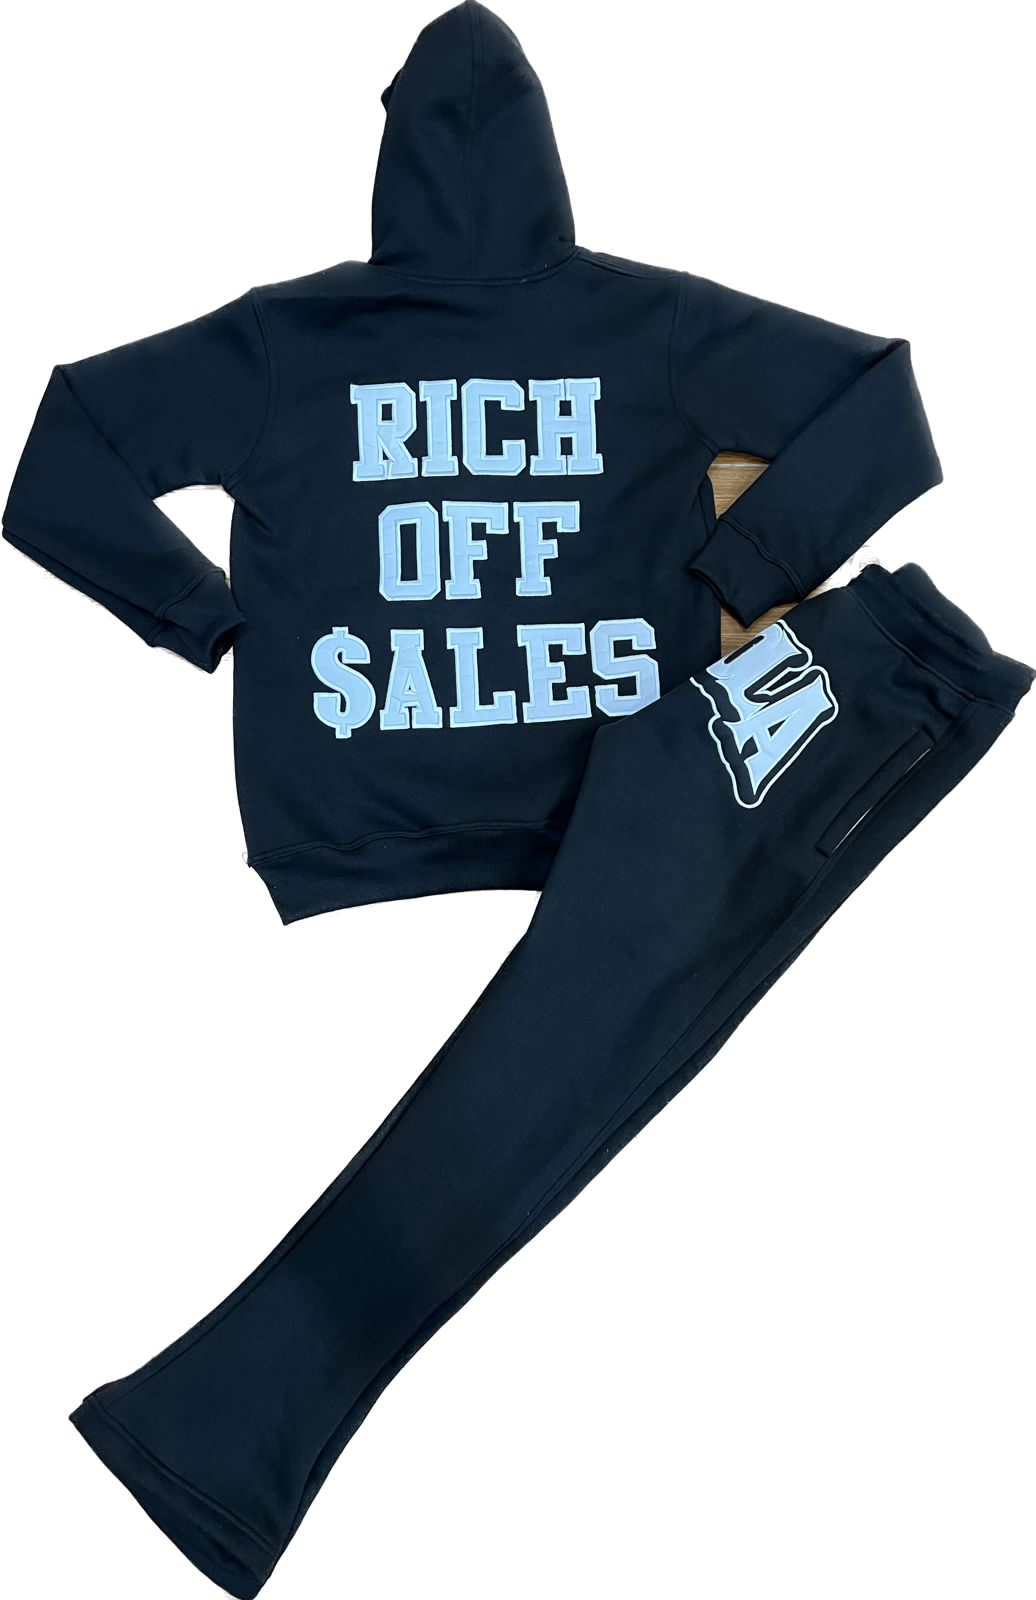 Rich Off Sales Jumpsuit (Black)